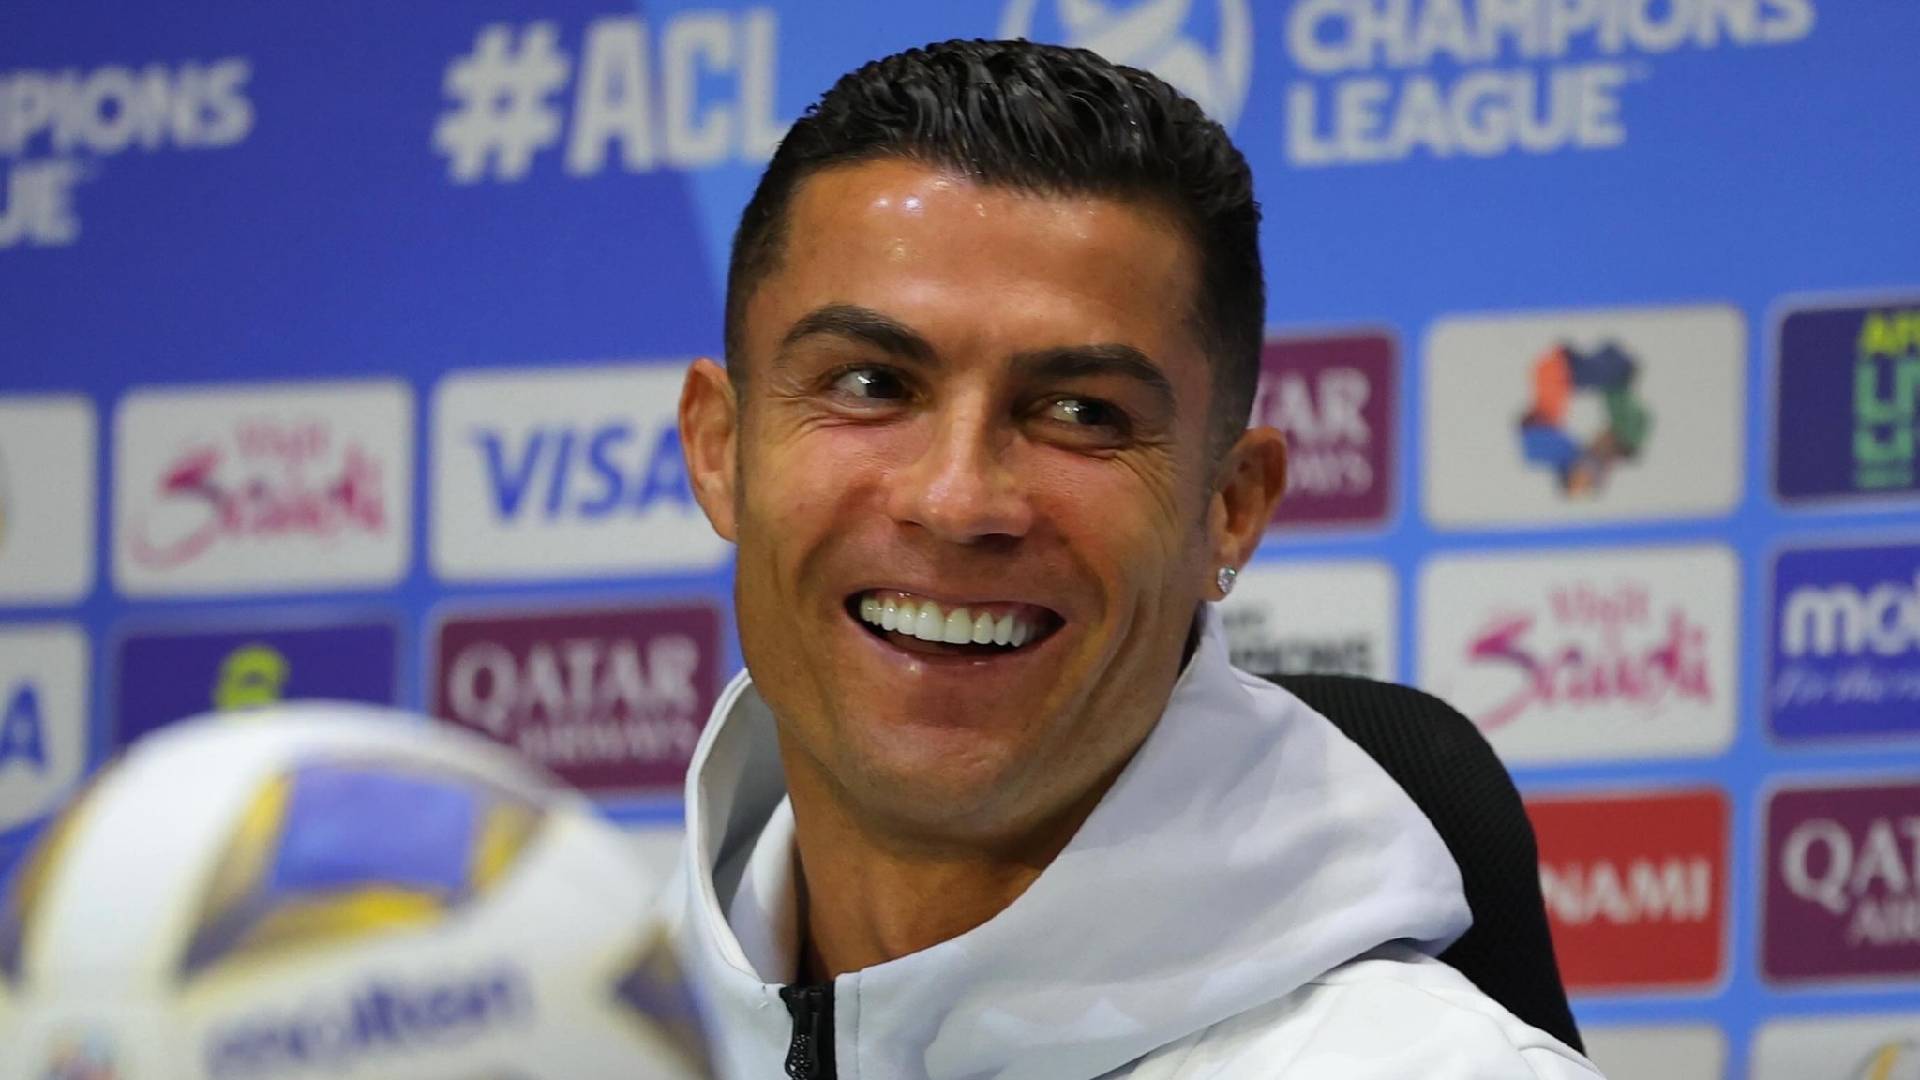 “Saya Bersedia Untuk Mengubahnya, InsyaAllah” – Cristiano Ronaldo